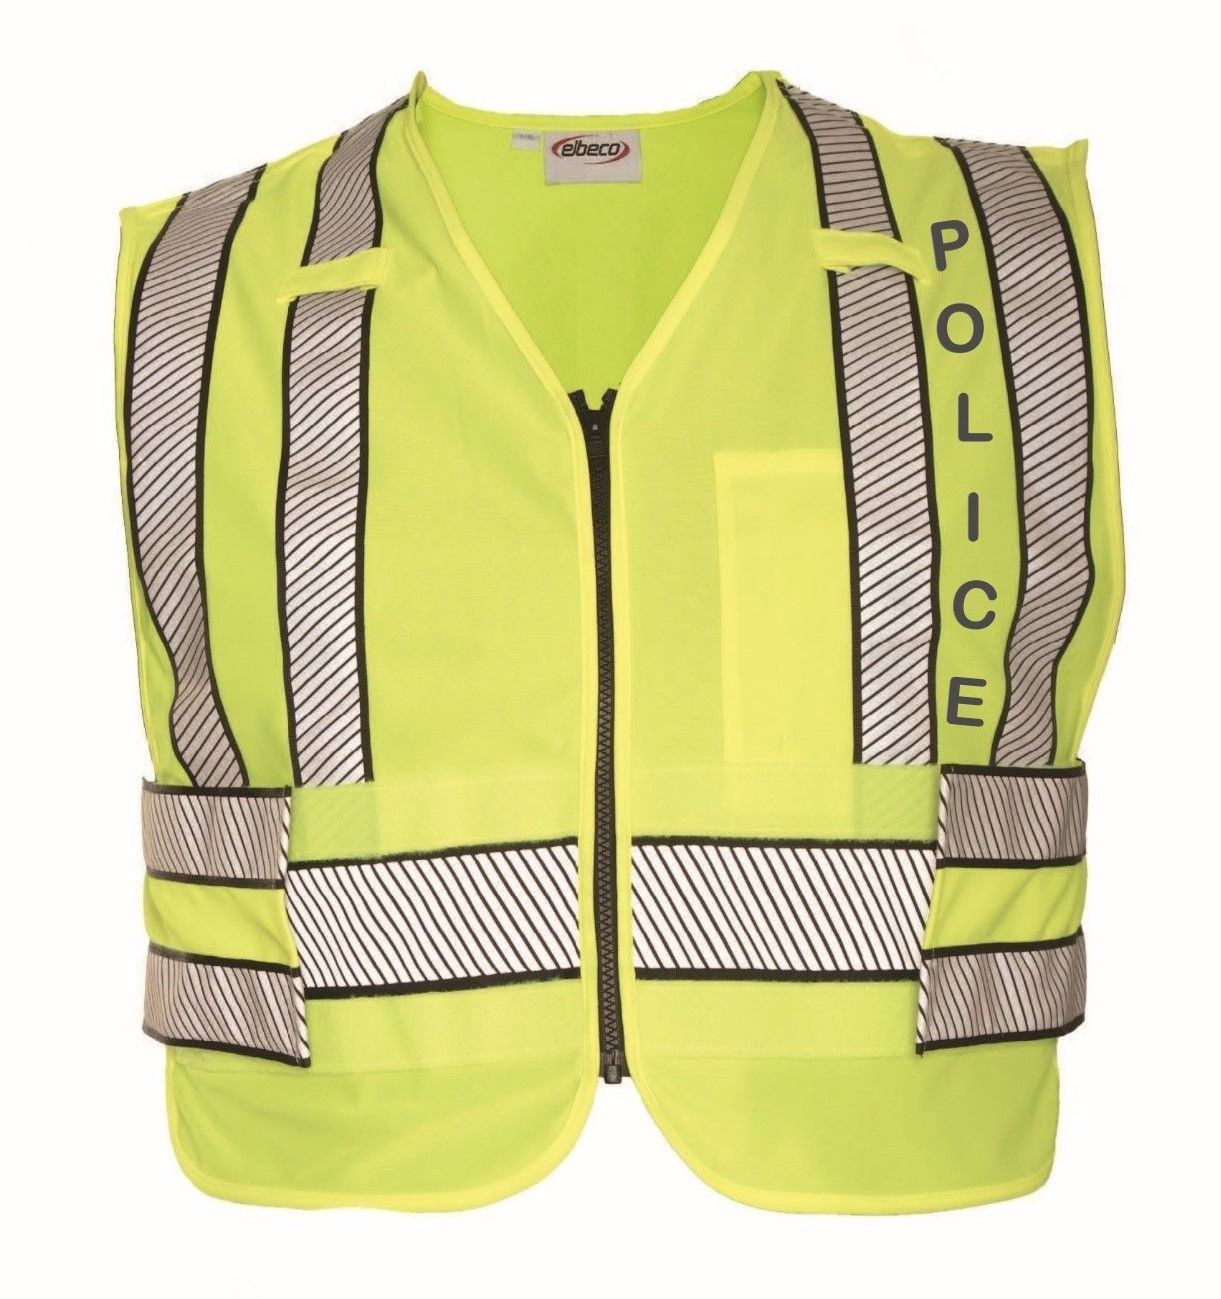 Elbeco Shield Hi-Vis Safety Vest Tactical Gear Tactical Gear Supplier Tactical Distributors Australia